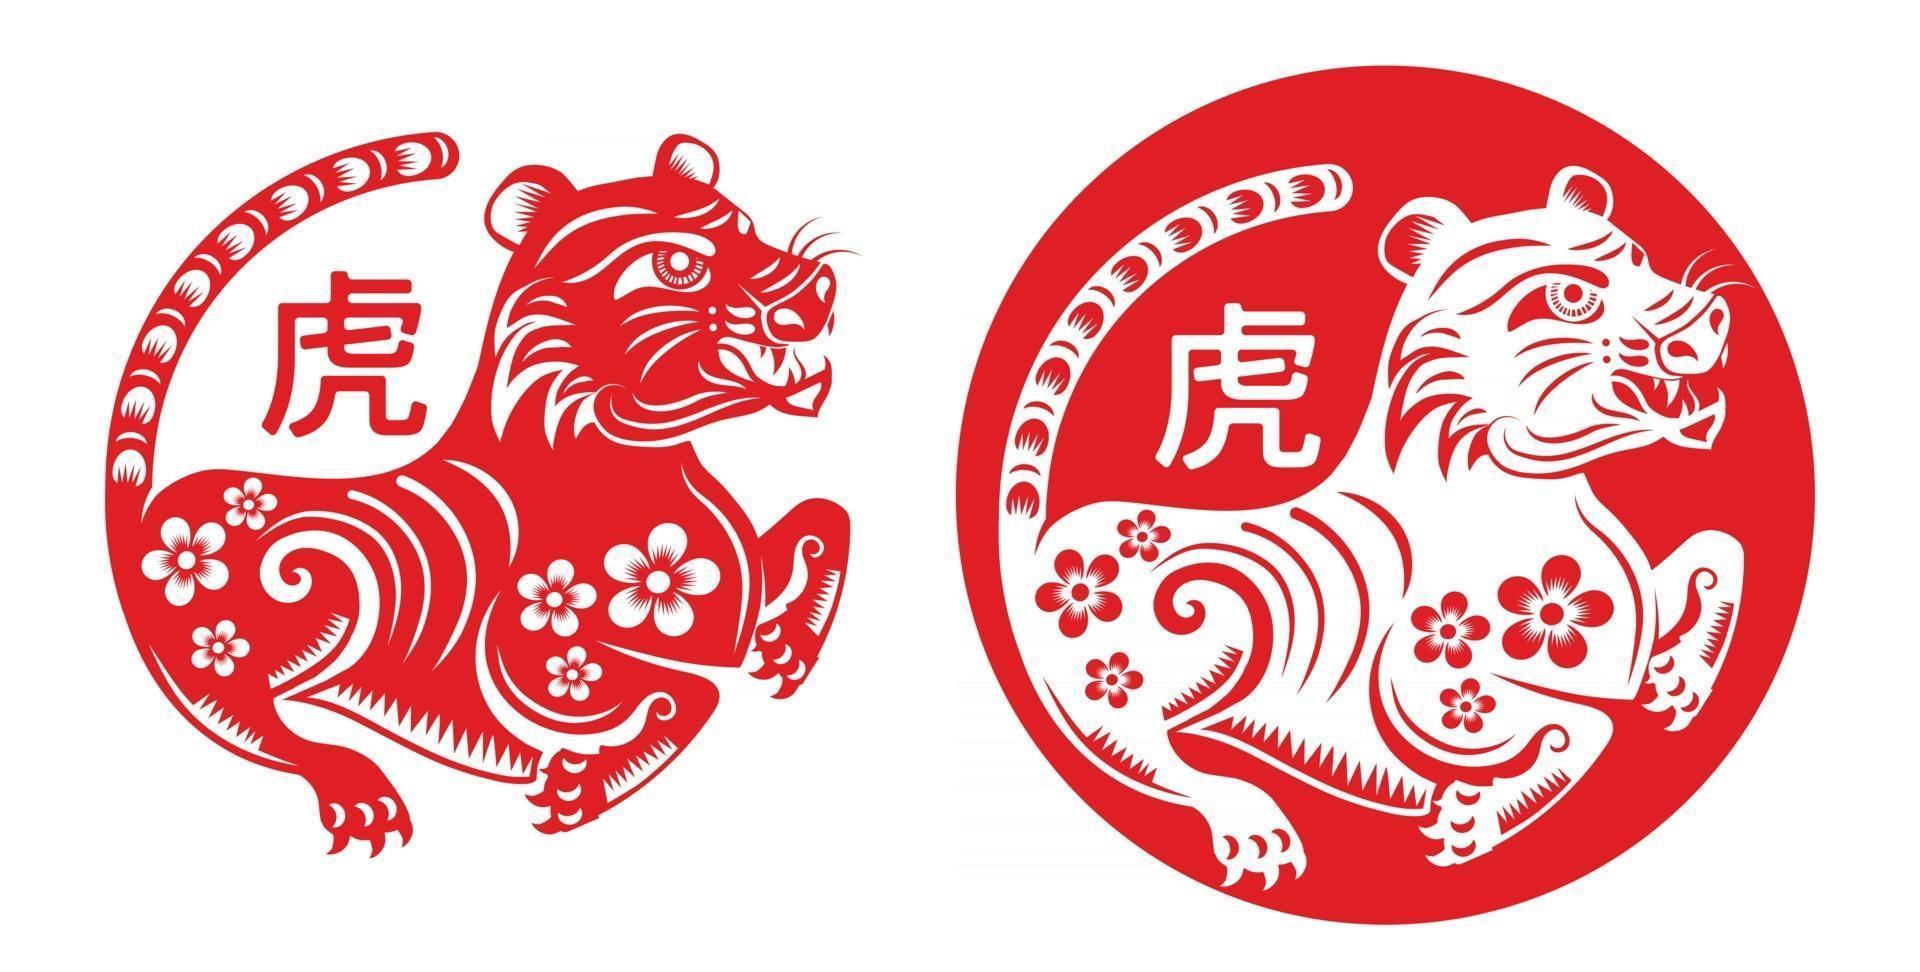 chinesisches neujahr 2022 jahr des tigers vektor